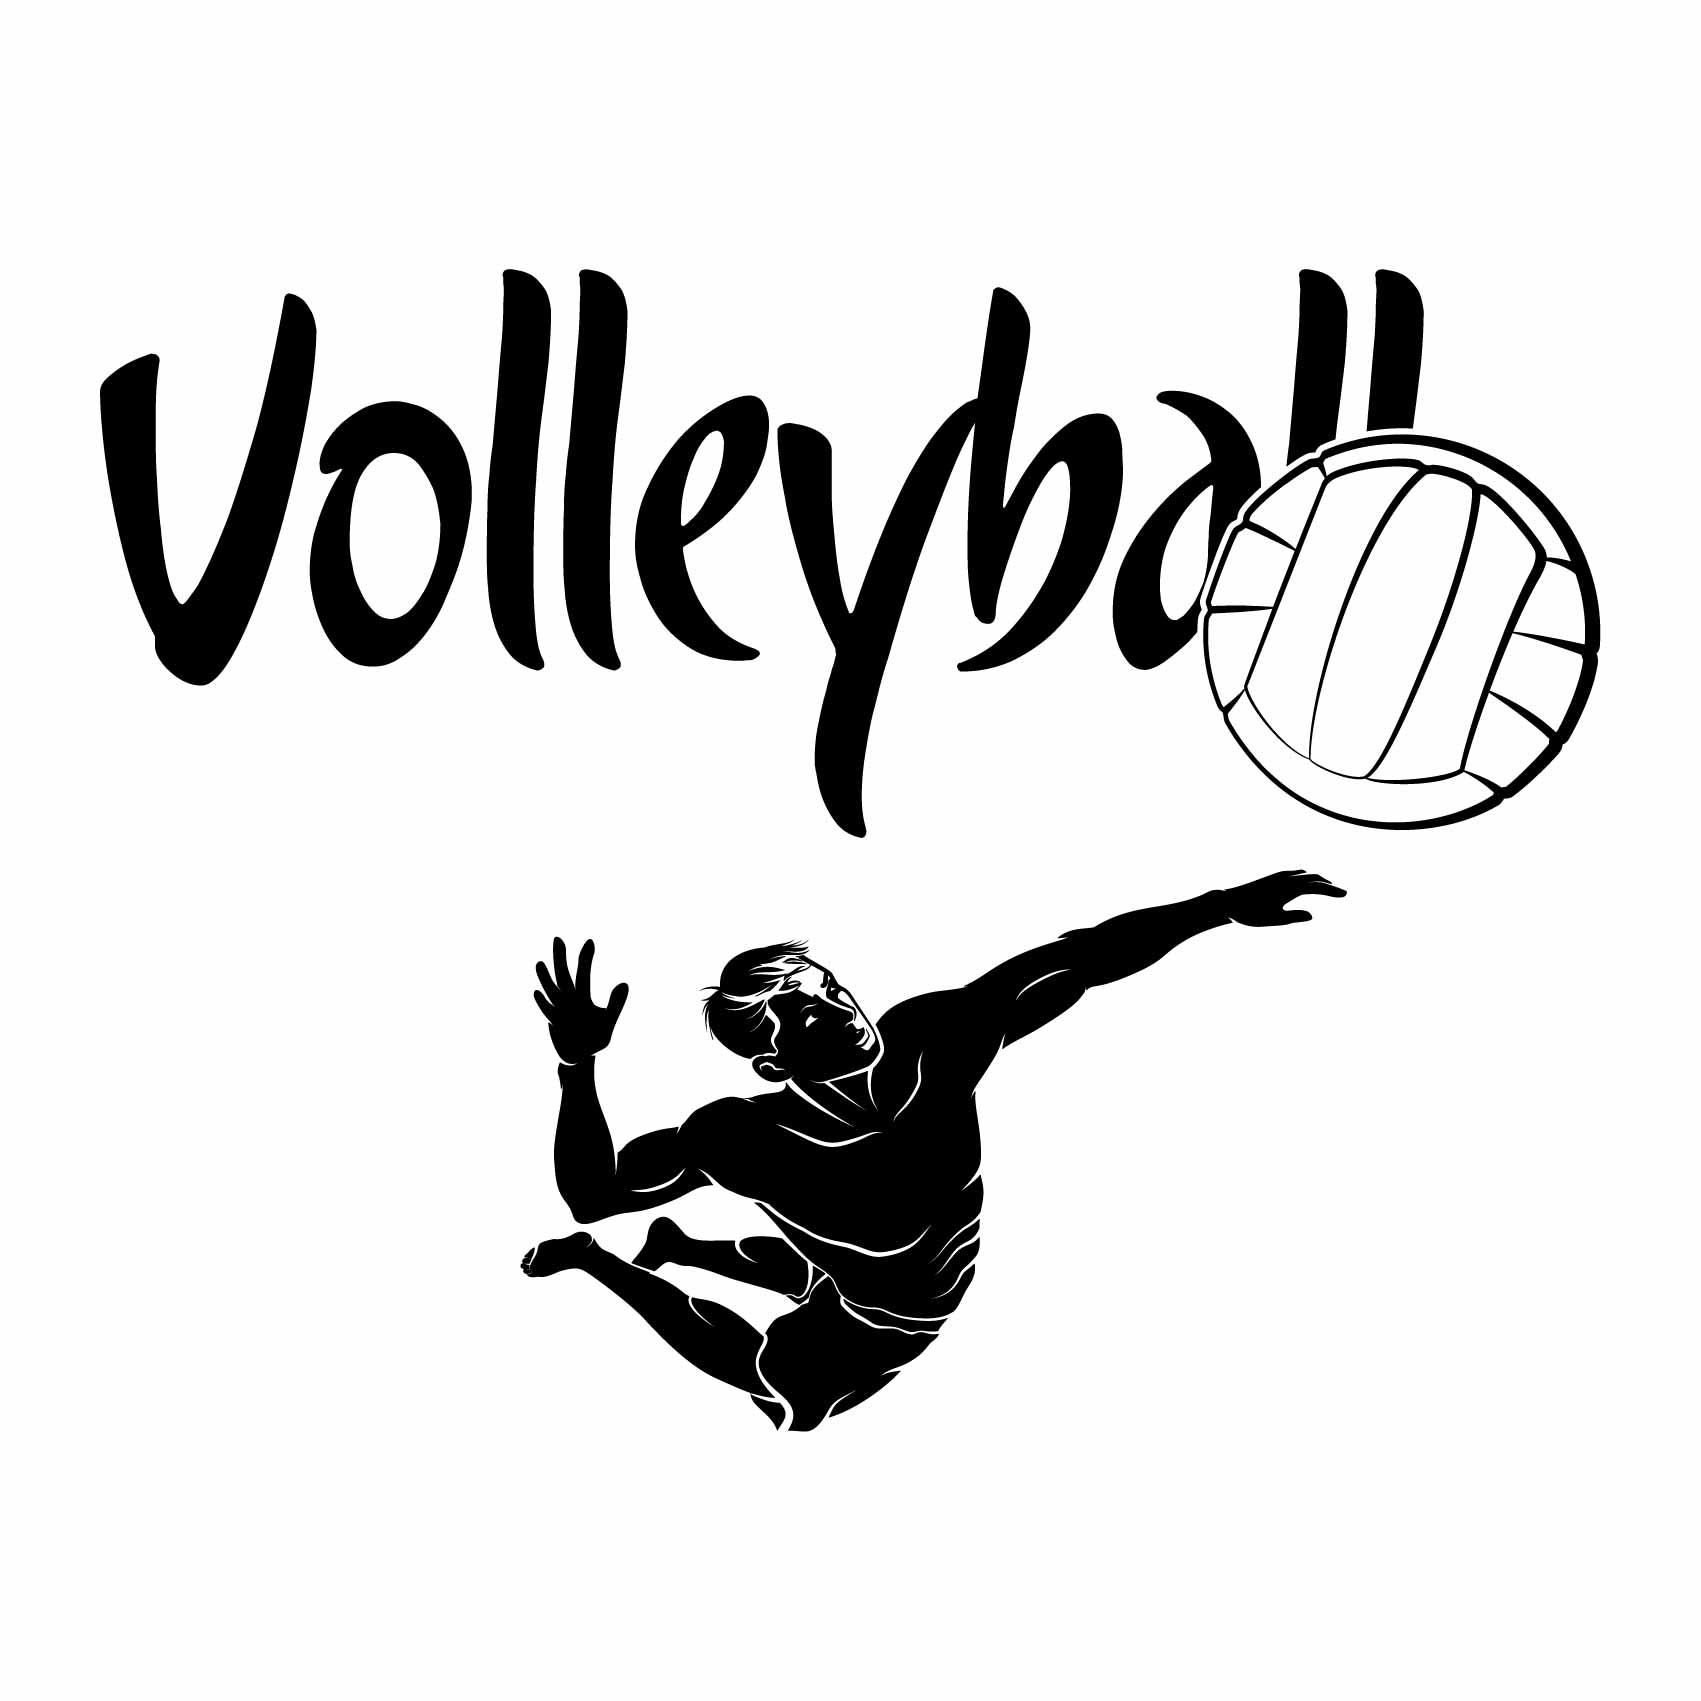 stickers-muraux-volleyball-ref7sport-stickers-muraux-volley-autocollant-volleyball-deco-chambre-enfant-salon-sticker-mural-sport-(2)